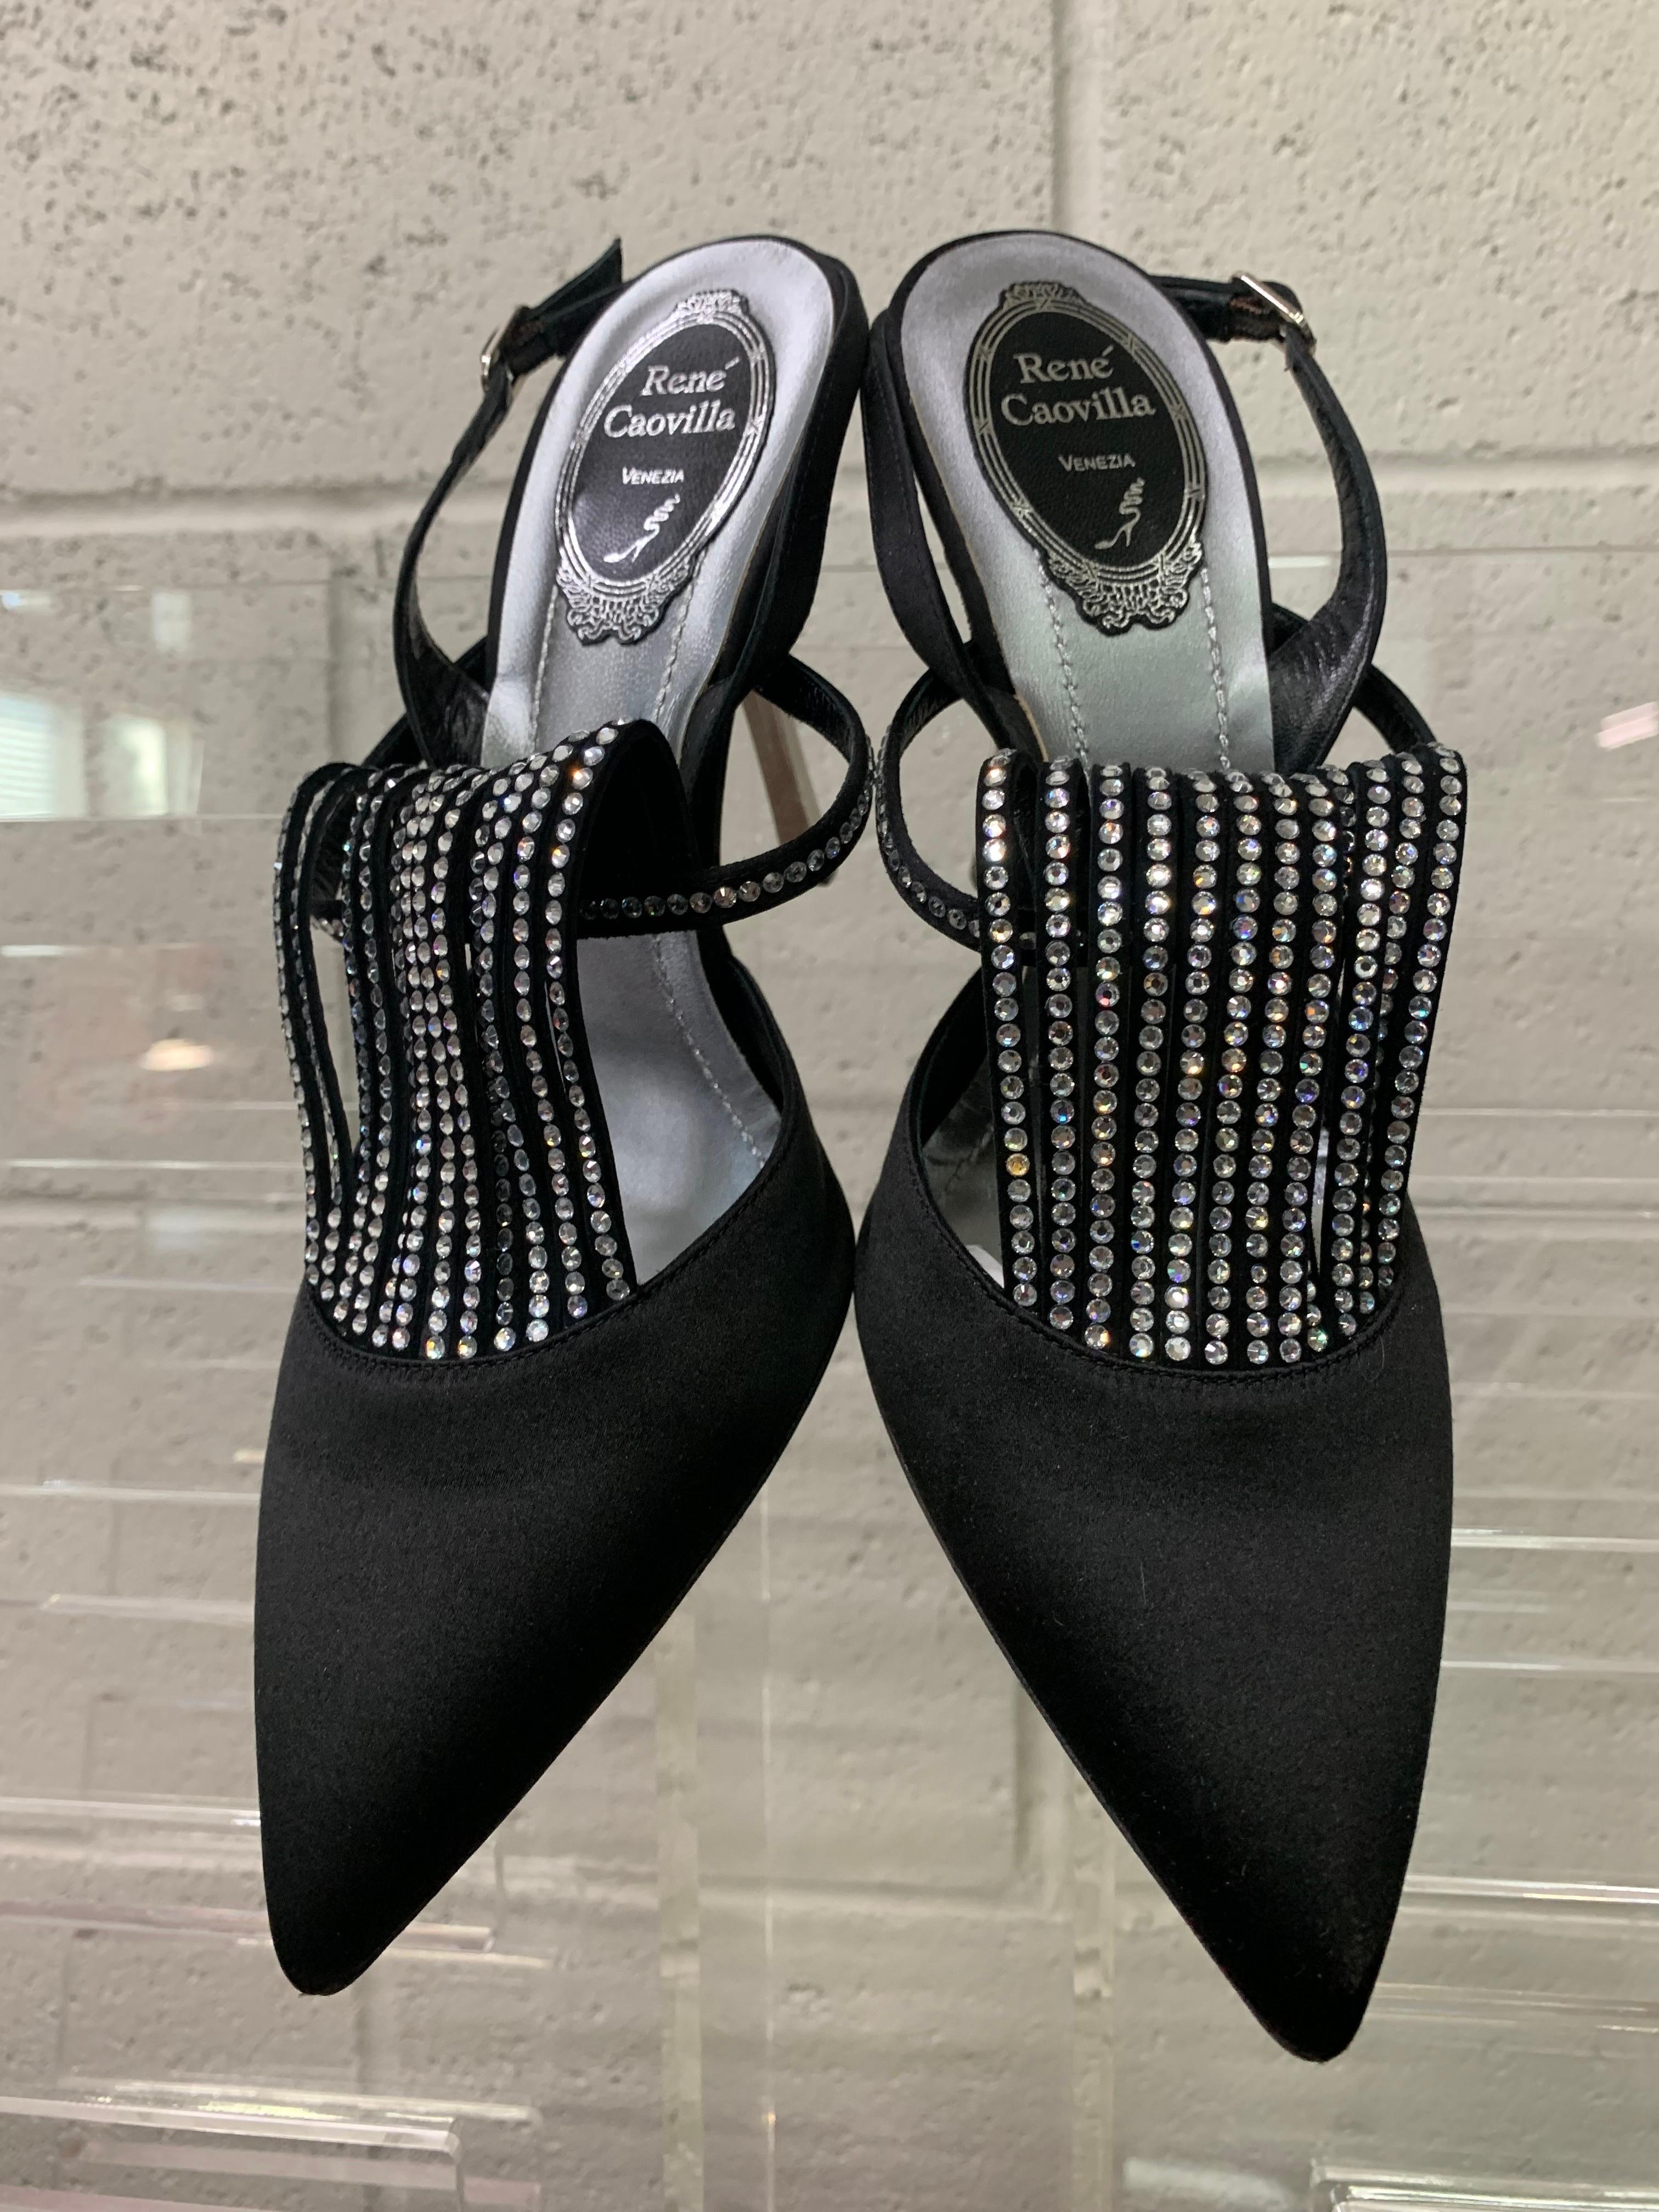 Rene Caovilla Black Peau de Soie Slingback Pumps w Rhinestone Fan-Shaped Throat: Silver Stiletto Heel. New, Never Worn.  Silver metallic leather soles. Size 8.5B